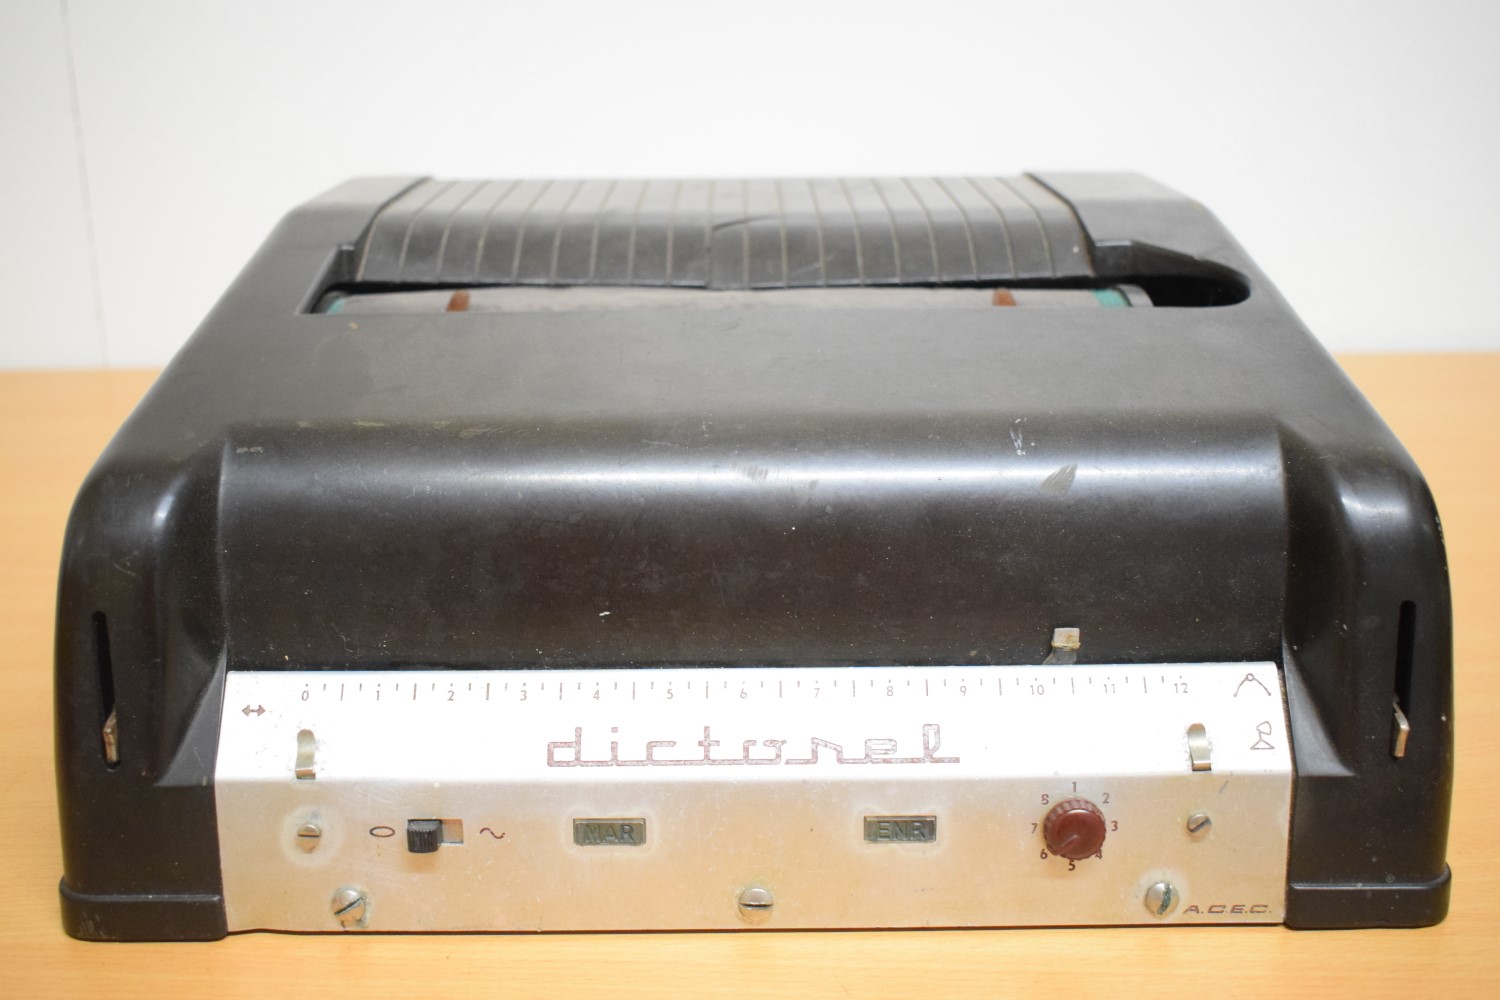 ACEC Dictorel 406 Dictaphone